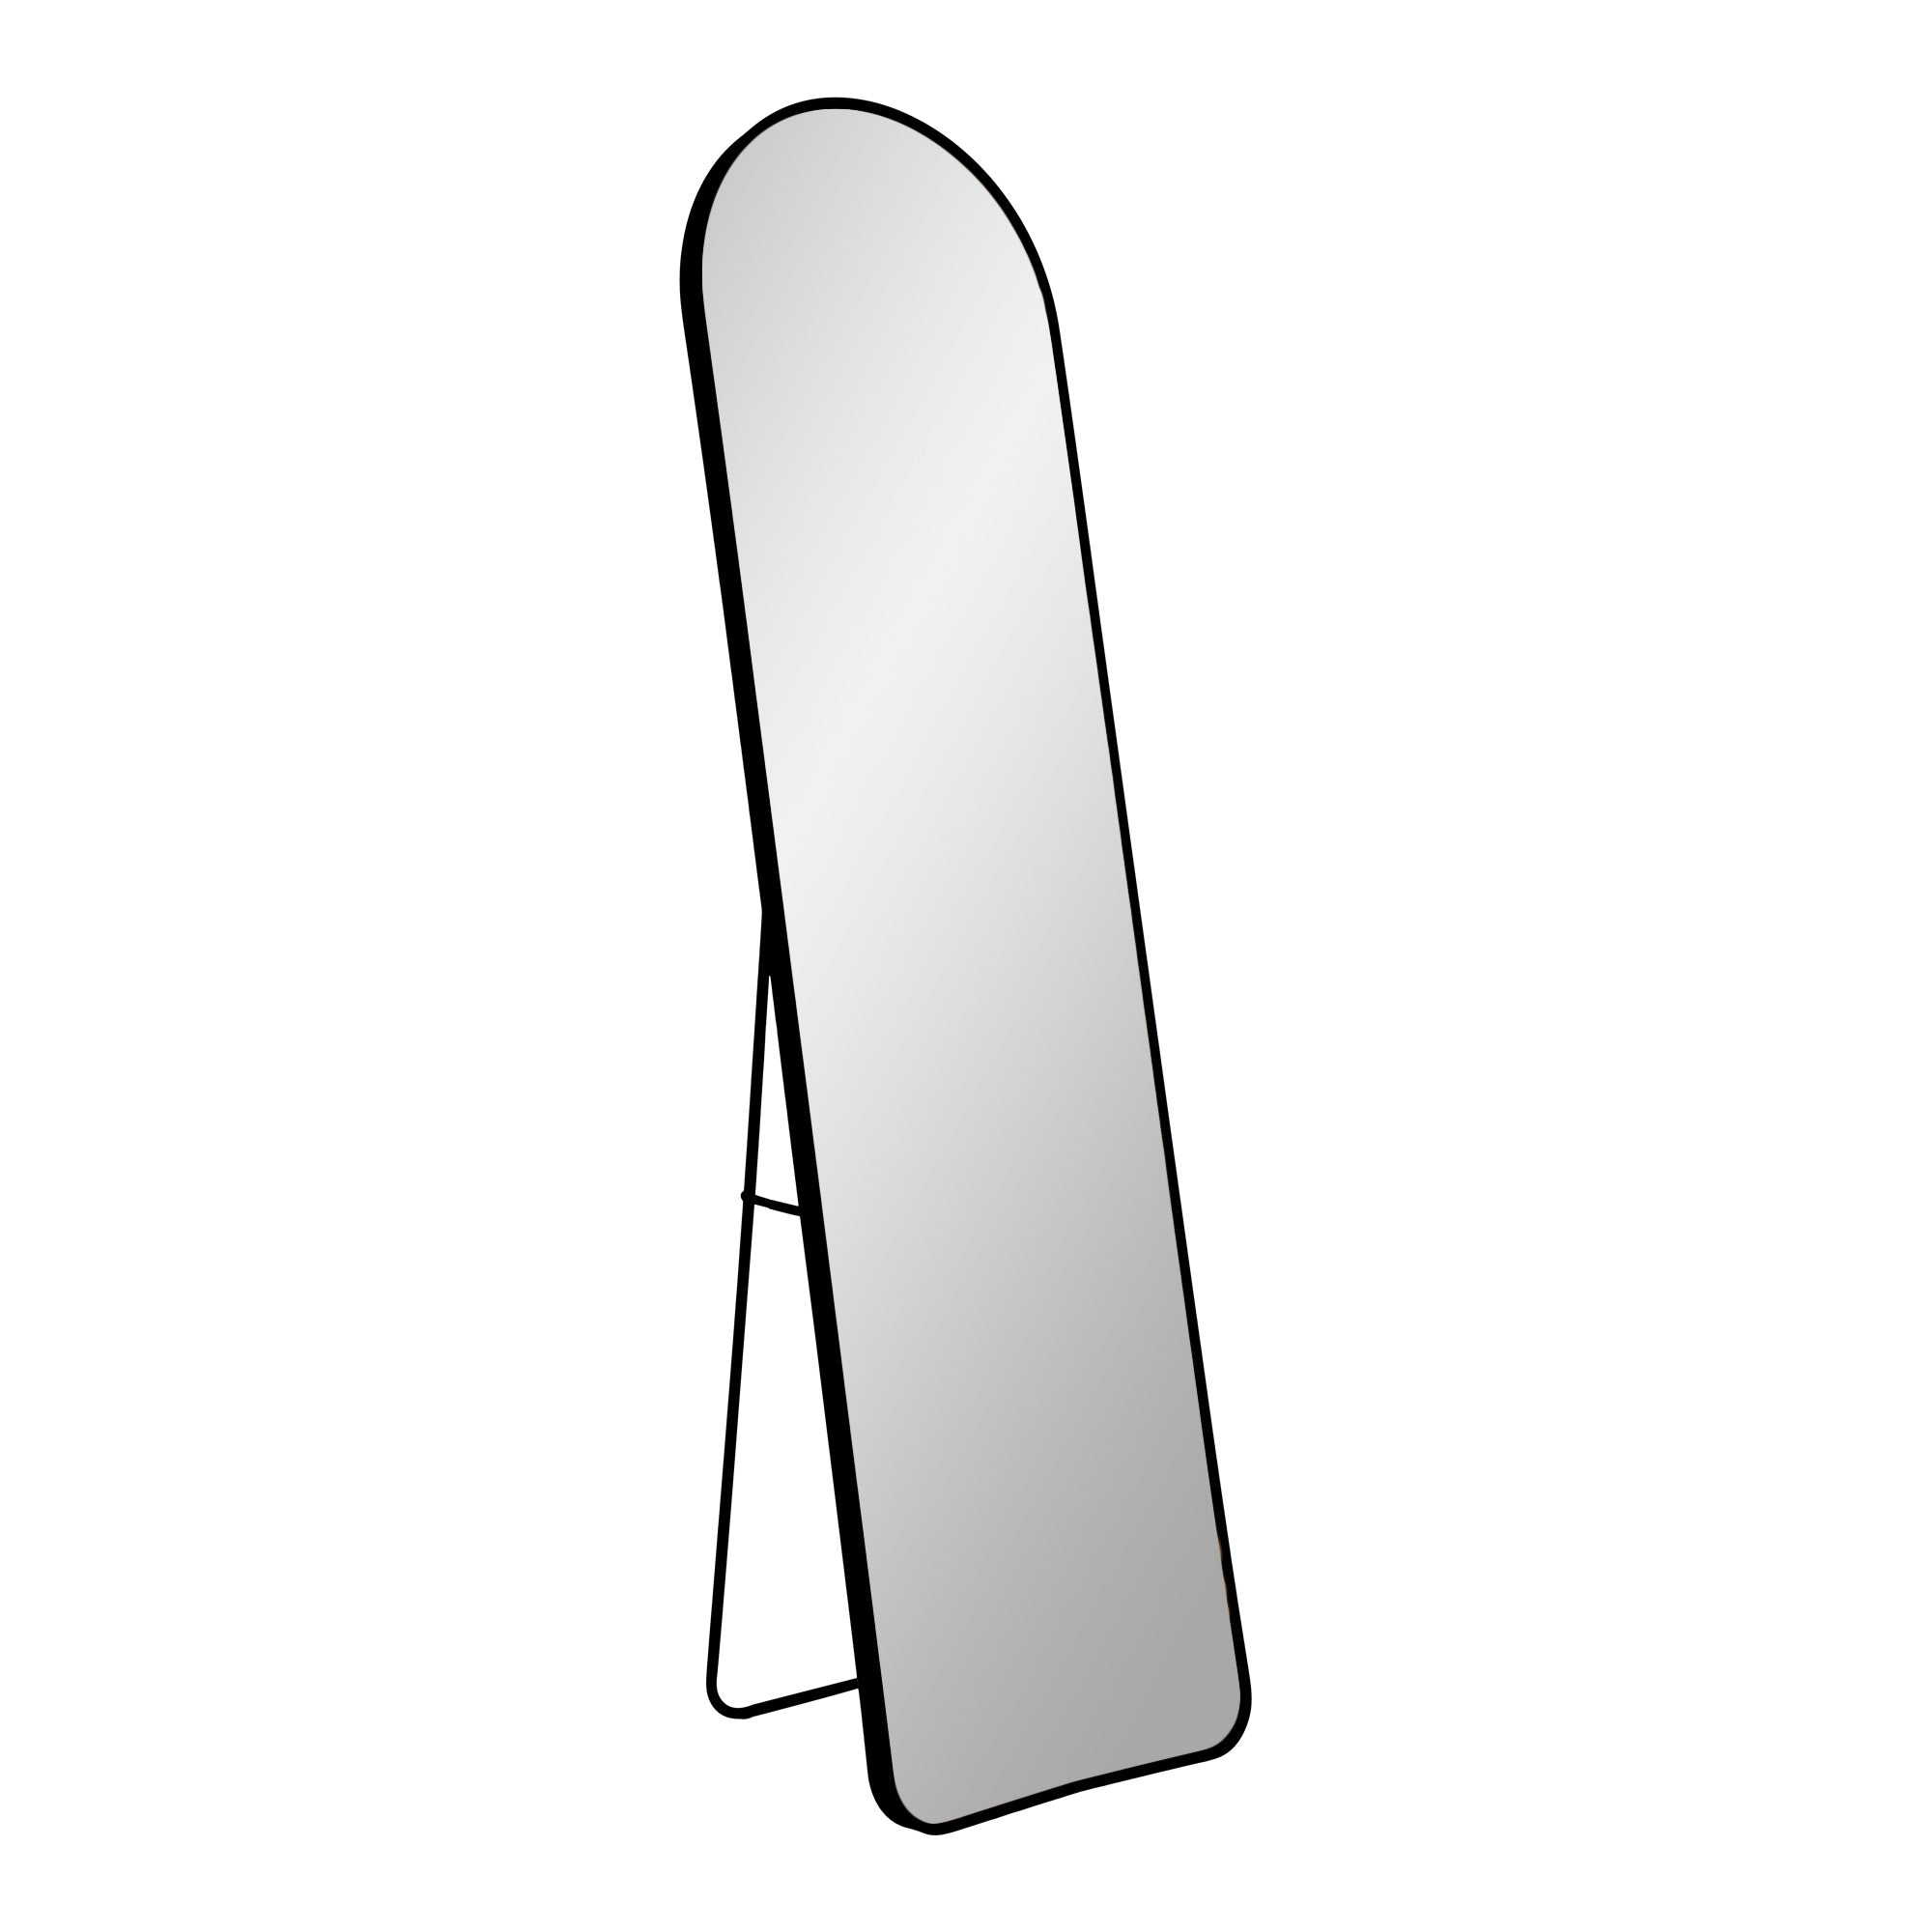 2: Madrid Spejl - Spejl i aluminium, sort, 40x150 cm